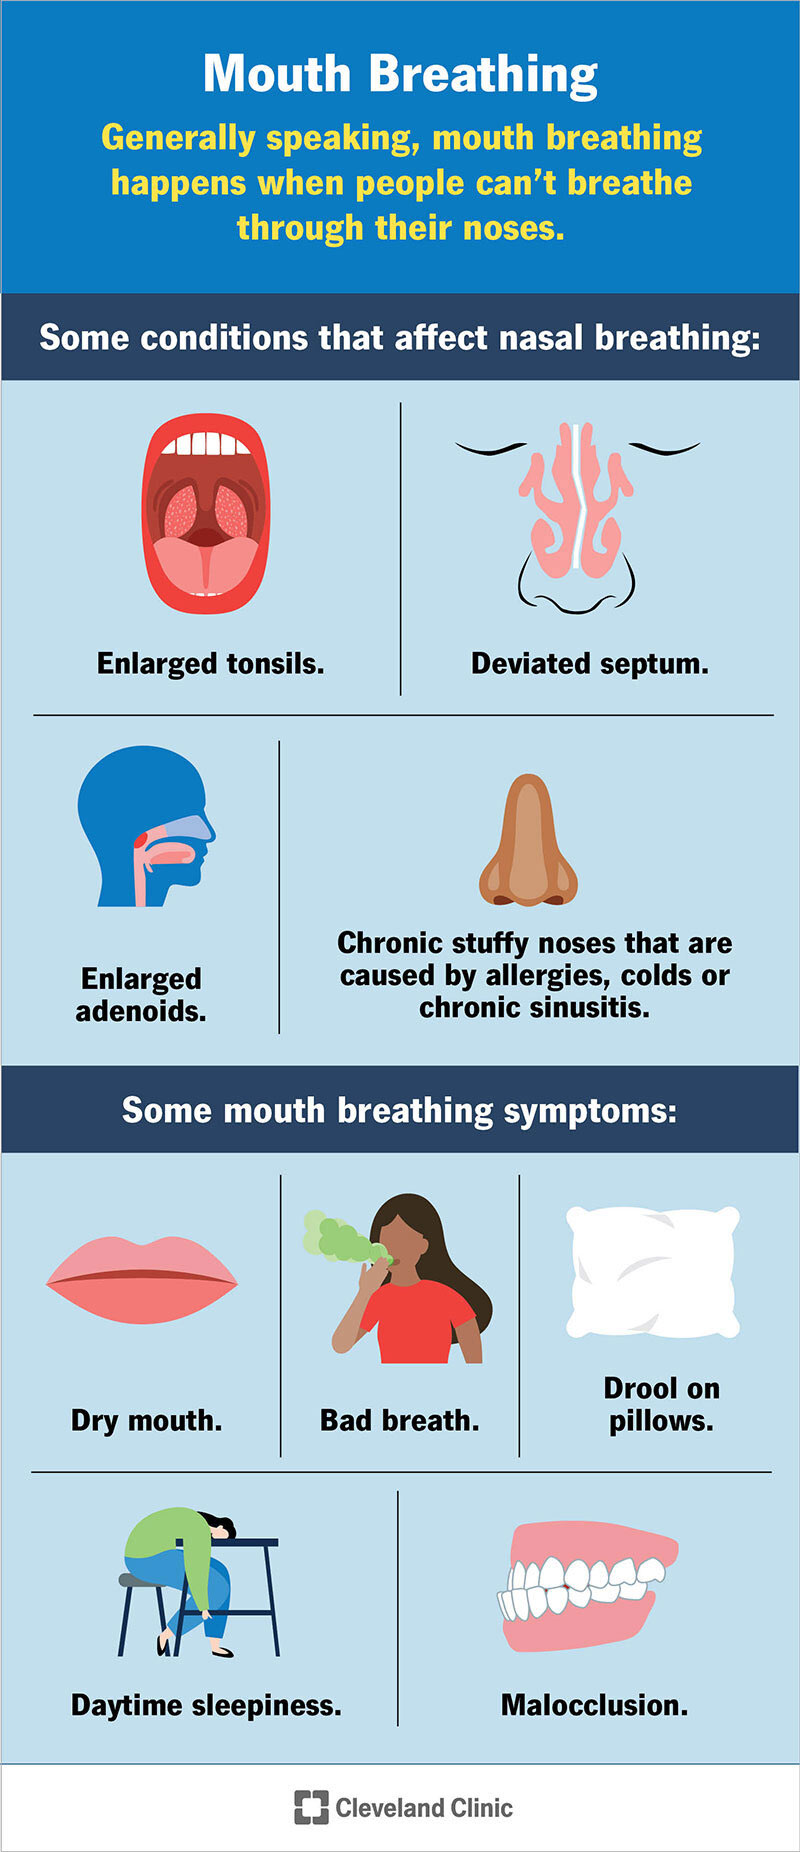 Kvėpavimas per burną sukelia viršutinės eilės kairę pusę: padidėjusios tonzilės ir nukrypusi pertvara.  Antra eilė kairėje pusėje: padidėję adenoidai ir lėtinis nosies užgulimas nuo alergijos, peršalimo ar lėtinio sinusito.  Kvėpavimo per burną simptomai viršutinėje eilutėje kairėje pusėje: burnos džiūvimas, blogas kvapas ir seilėtekis ant pagalvės.  Antra eilė kairėje pusėje: dienos mieguistumas ir netvarkingas sąkandis.